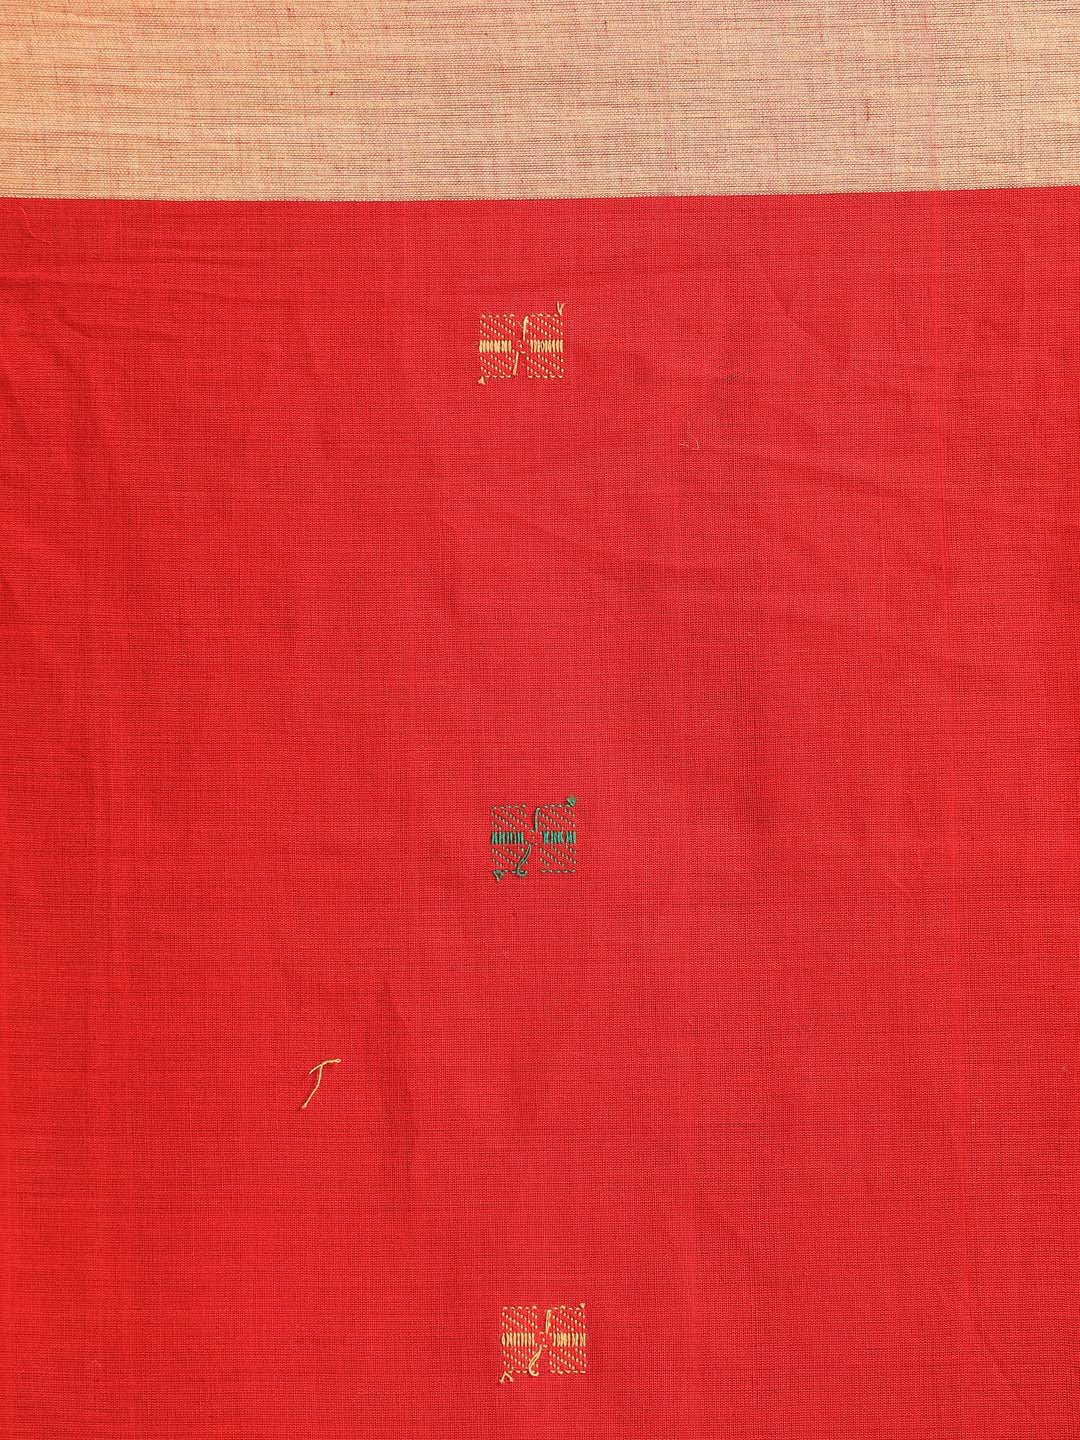 Indethnic Red Bengal Handloom Pure Cotton Saree Daily Saree - Saree Detail View